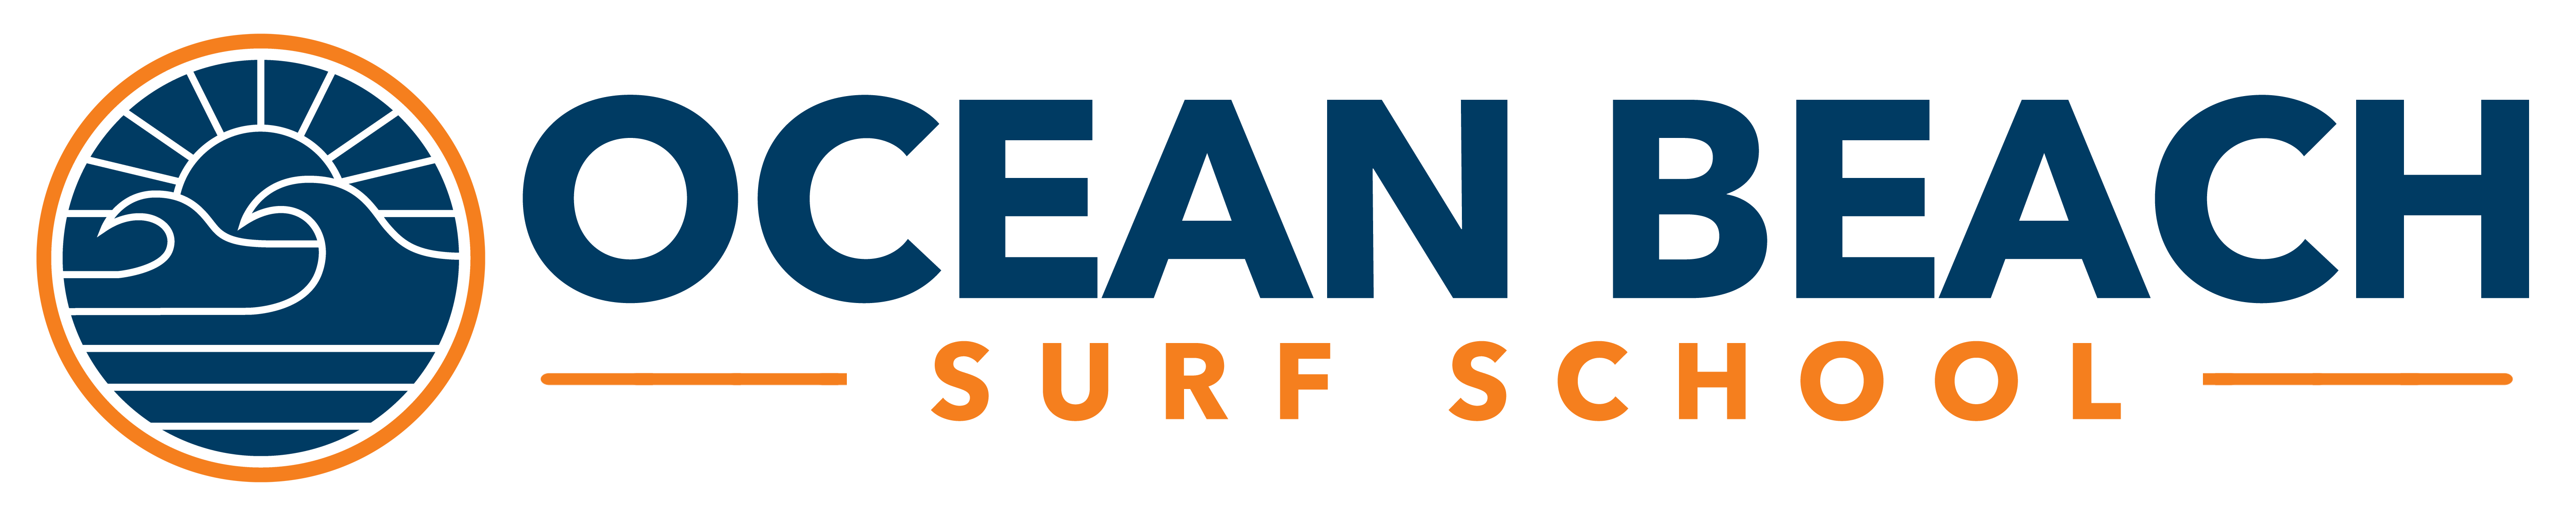 OCEAN BEACH SURF LESSONS